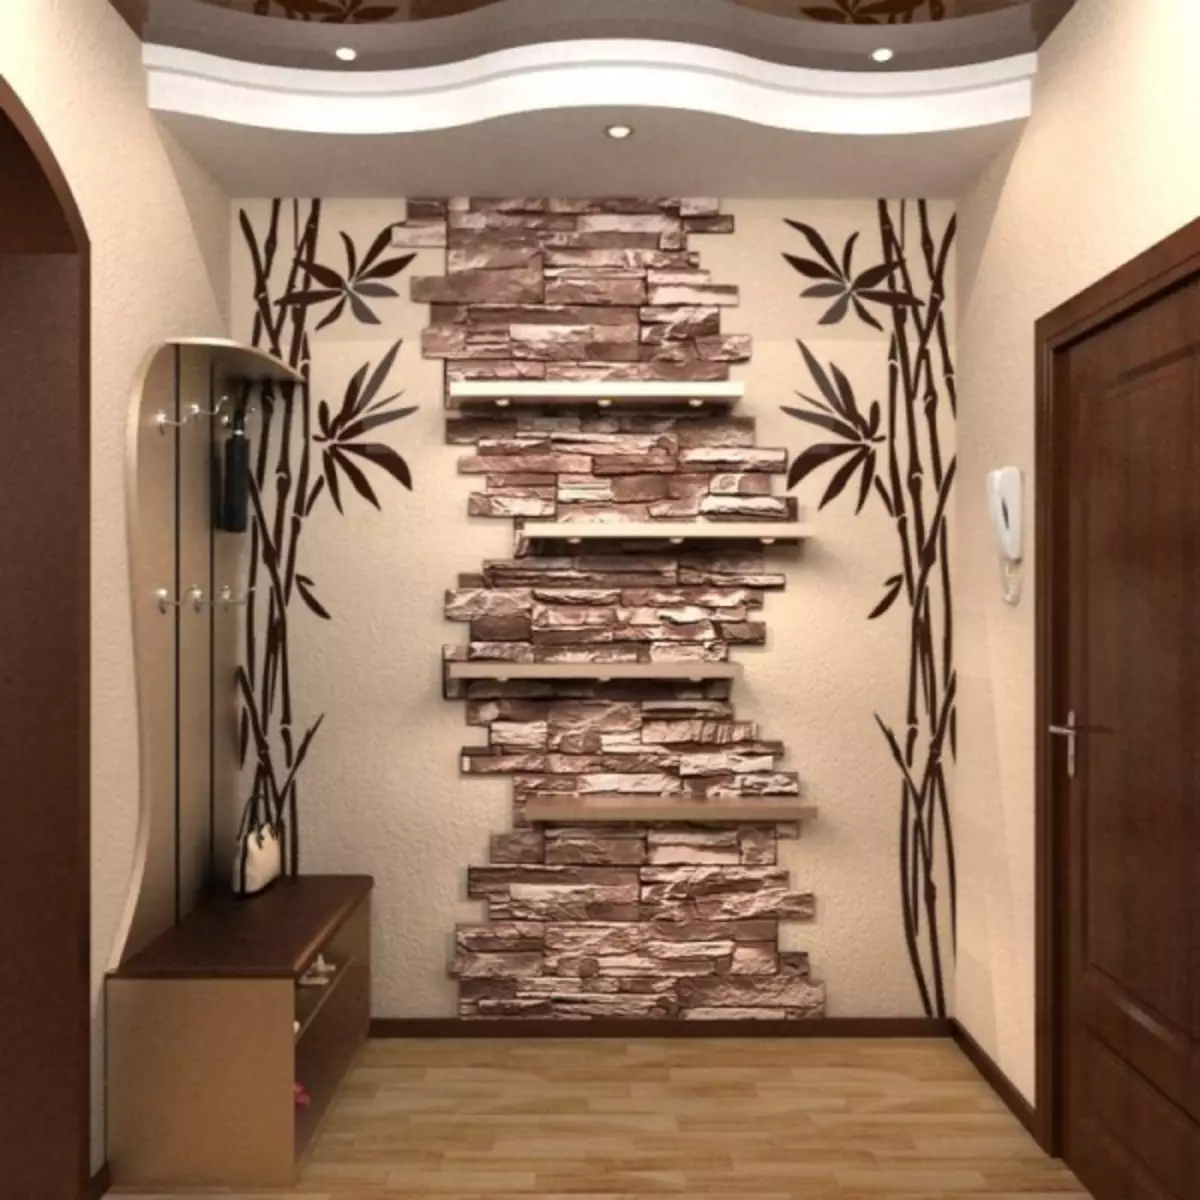 Finishing Hallway dengan batu hiasan dan gambar kertas dinding: kertas dinding untuk batu, batu bata, video